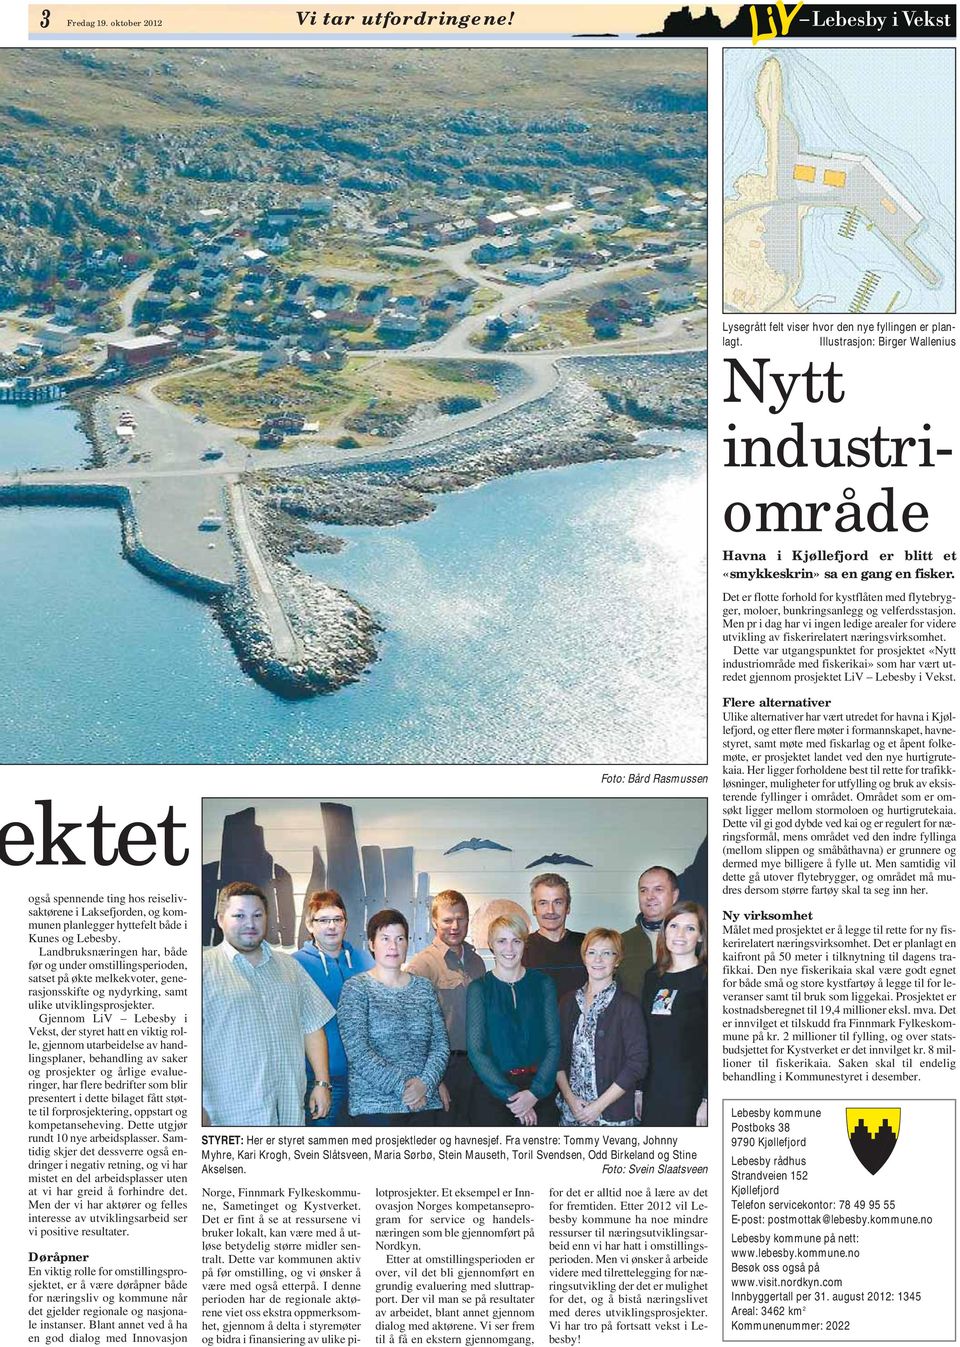 ktet også spennende ting hos reiselivsaktørene i Laksefjorden, og kommunen planlegger hyttefelt både i Kunes og Lebesby.